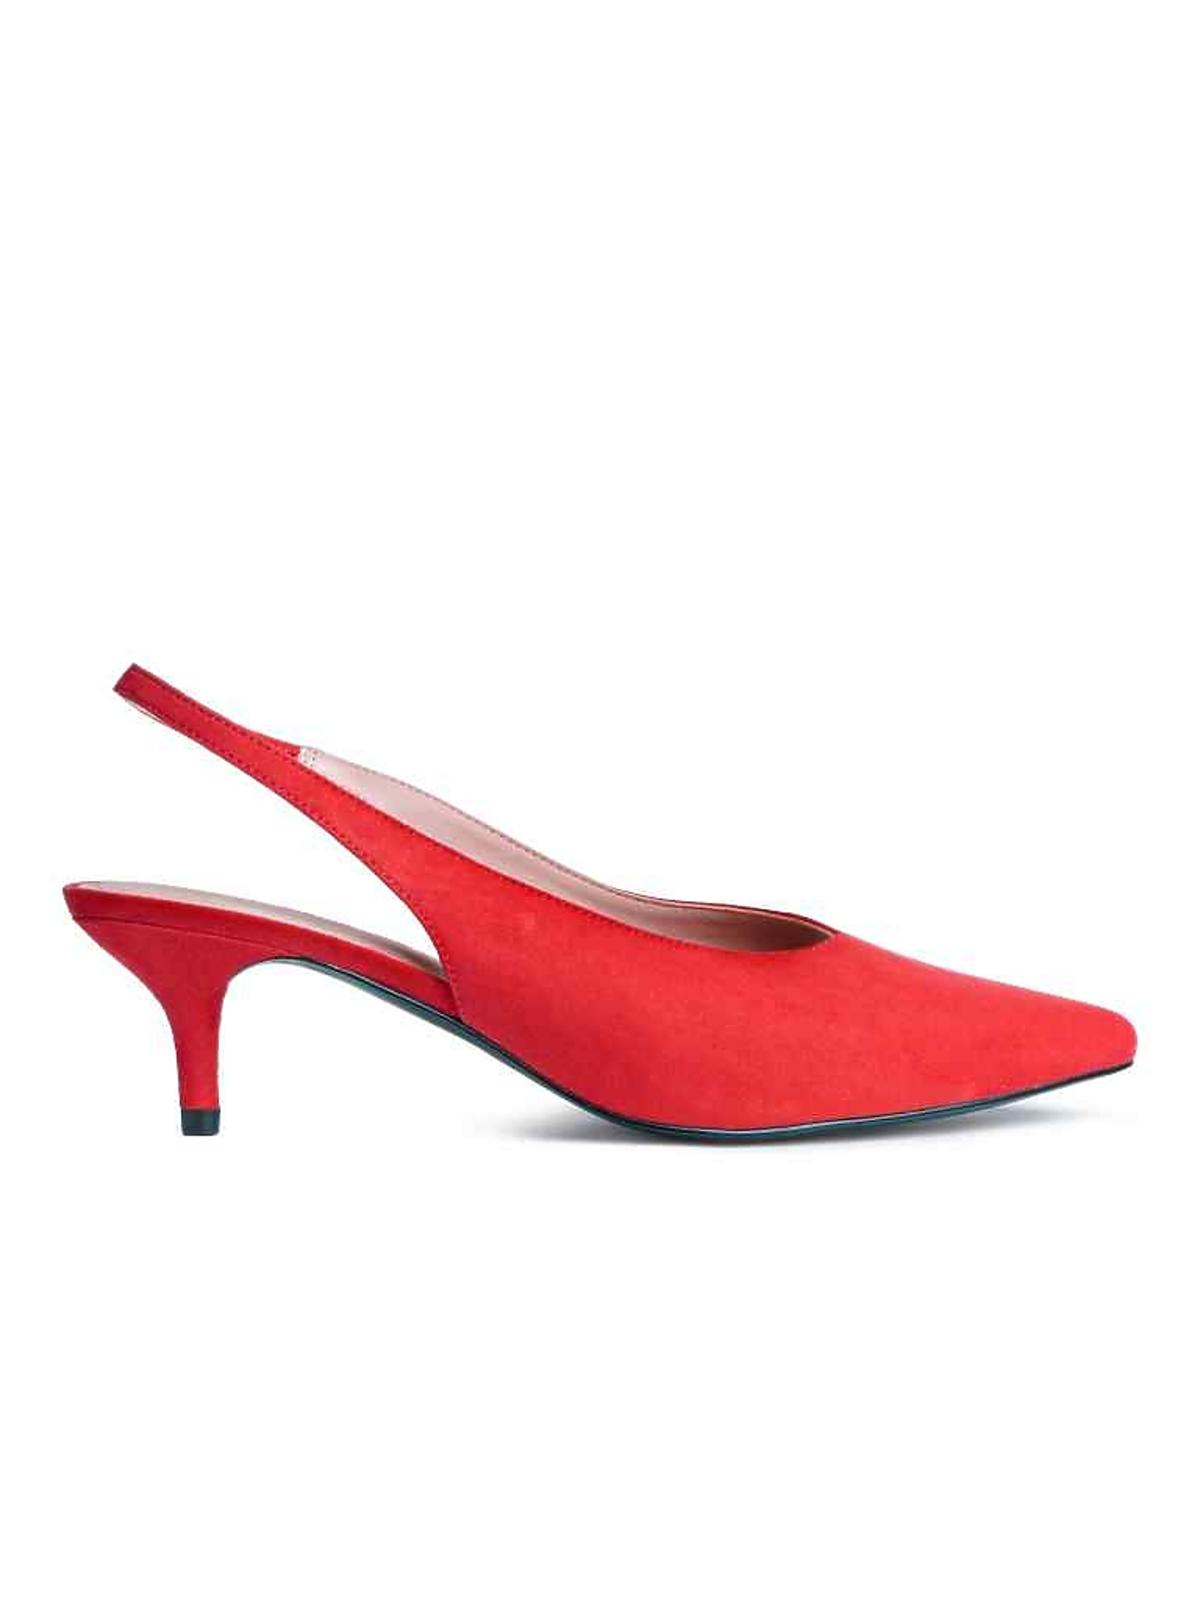 Czerwona buty na niskim obcasie, H&M, 99.90 zł